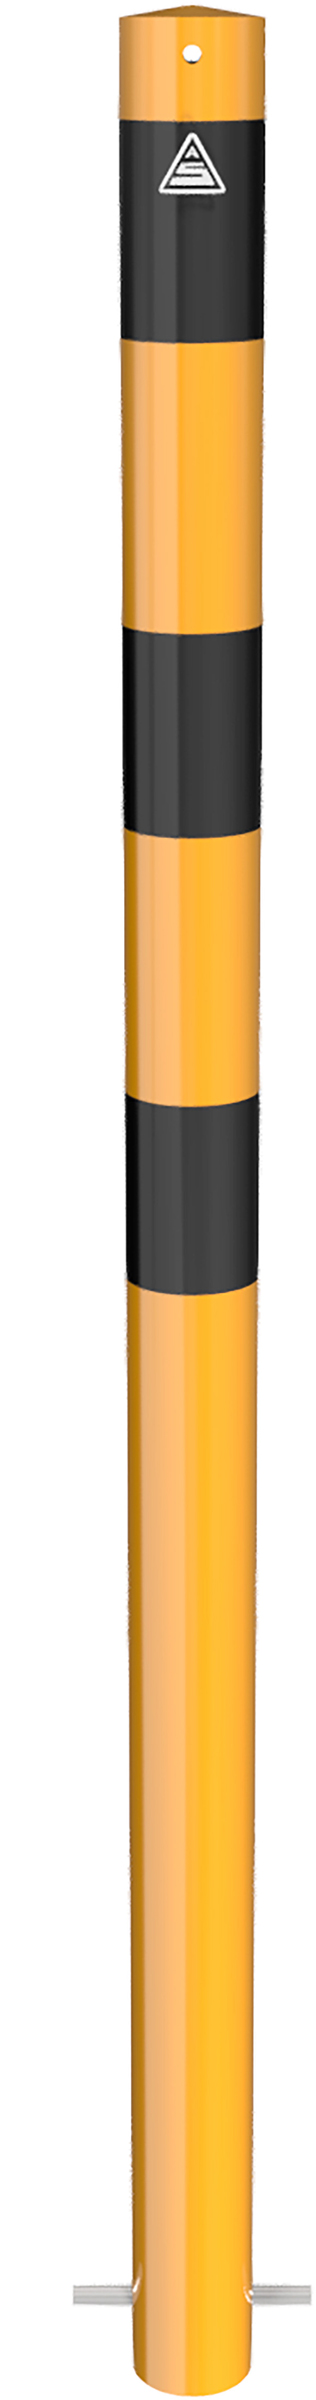 Schake Absperrpfosten OE Ø 76 mm gelb | schwarz